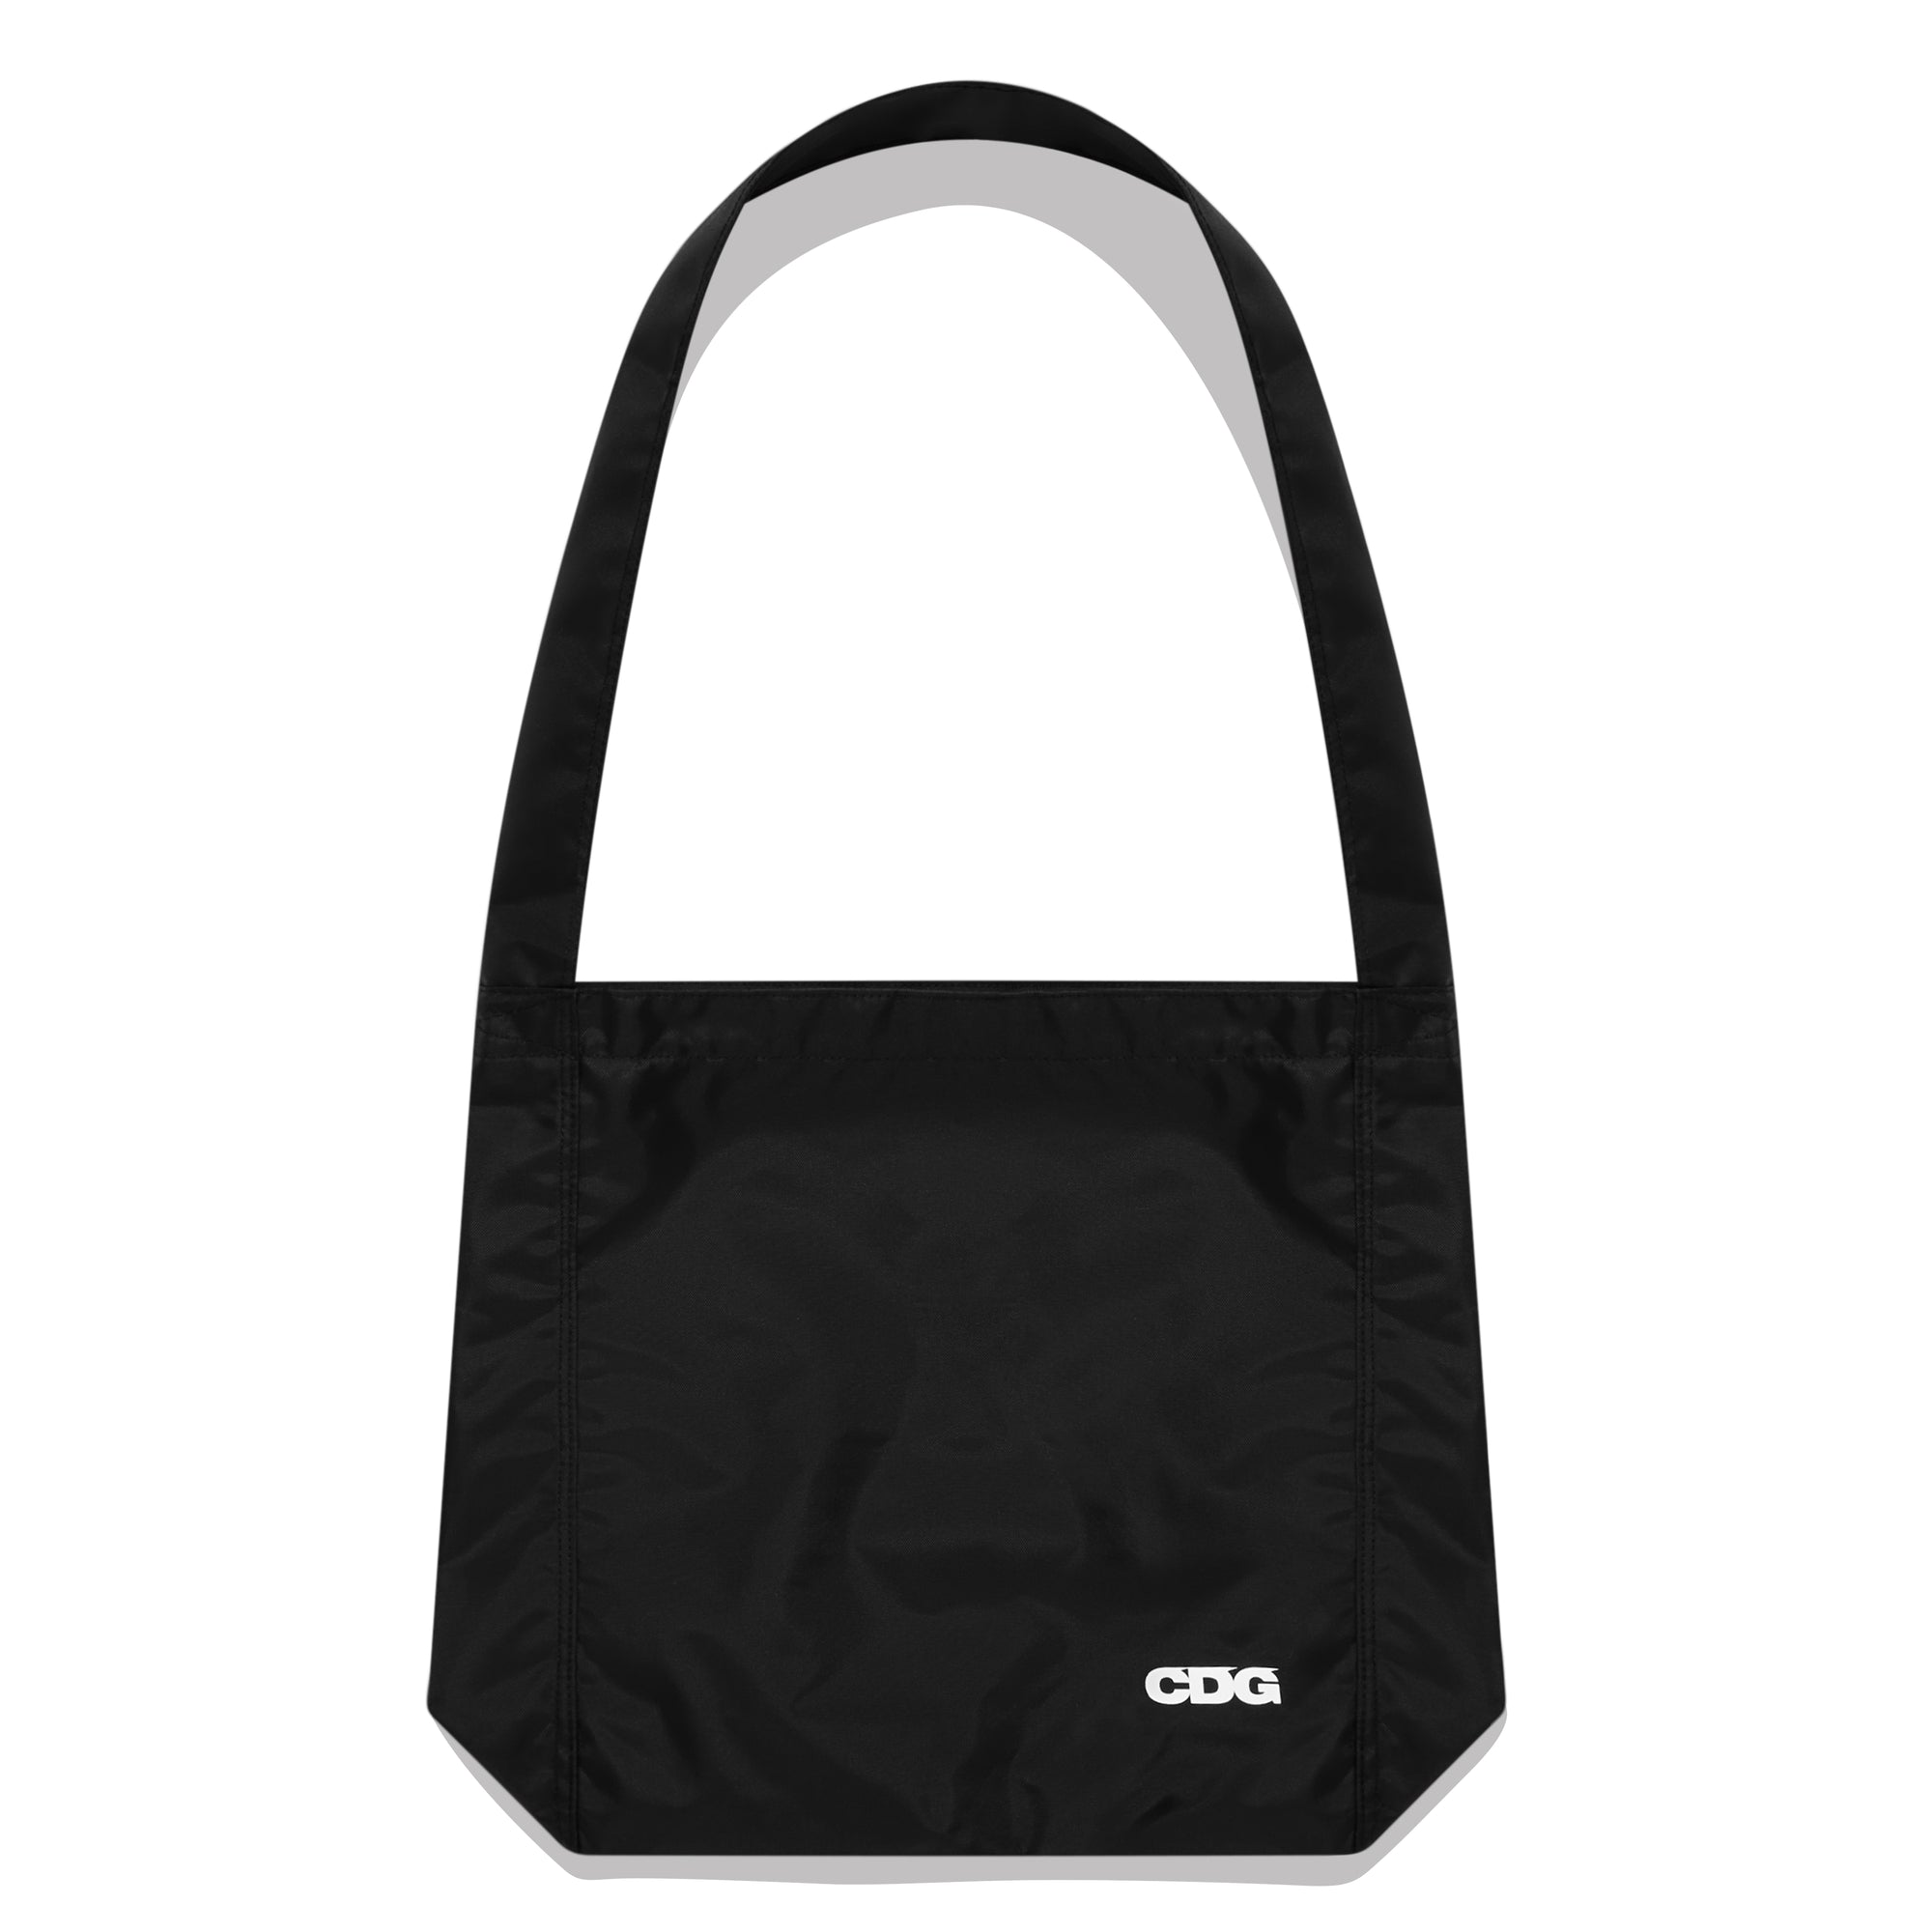 CDG - Shoulder Bag - (Black) view 1